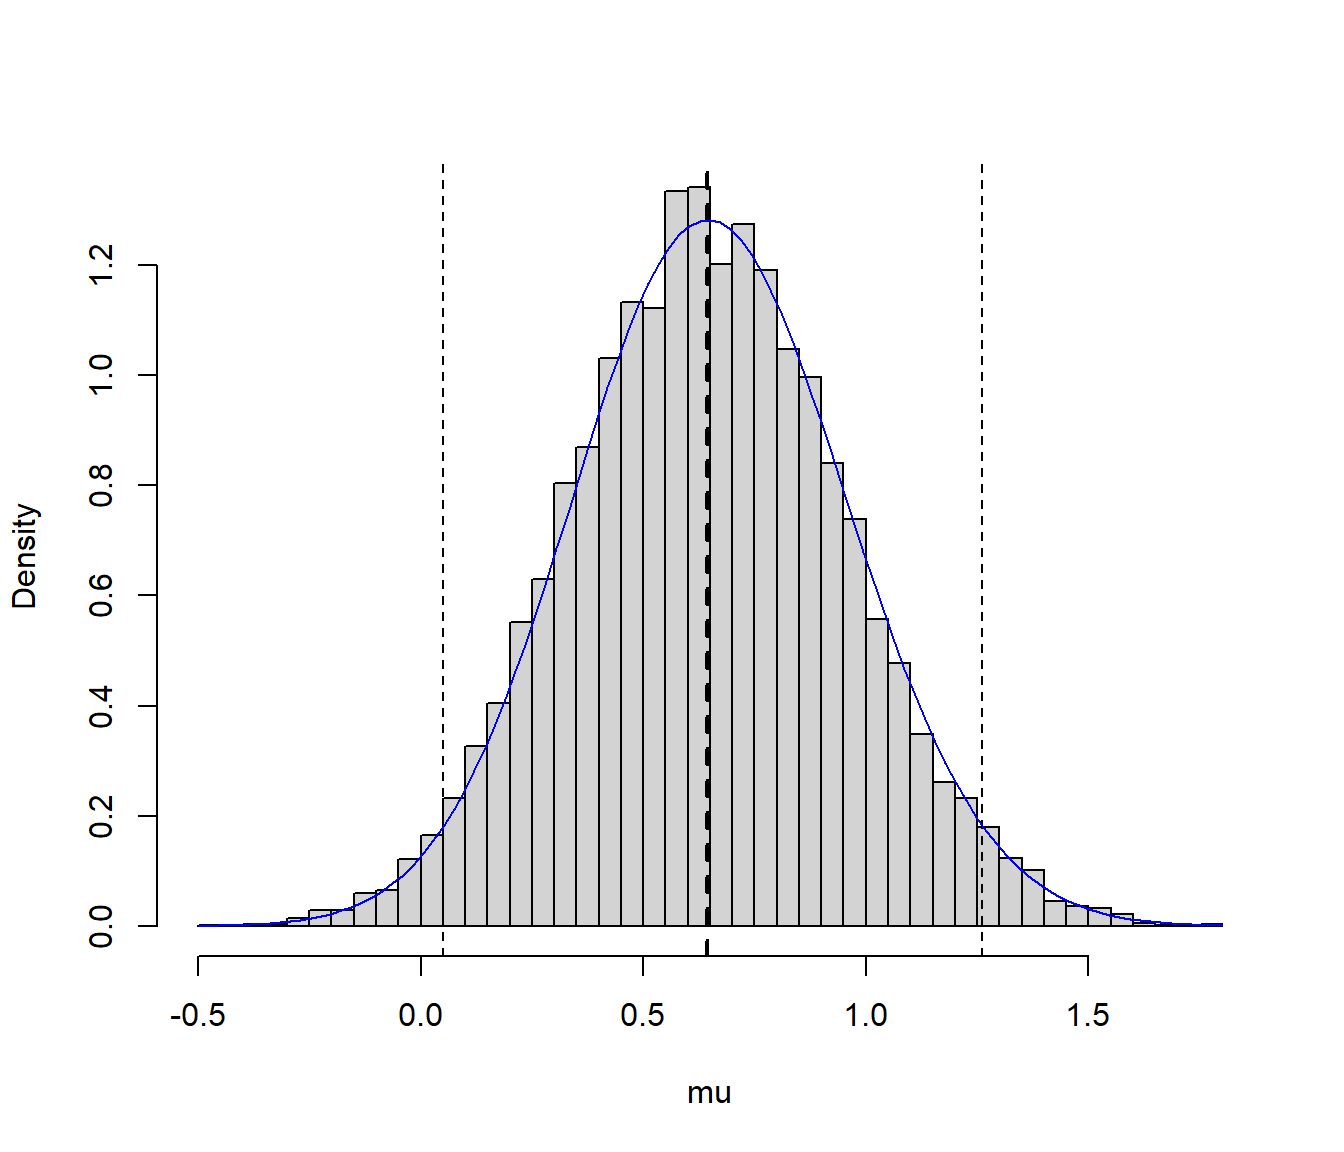 Distribución de los valores generados y aproximación del intervalo de credibilidad.